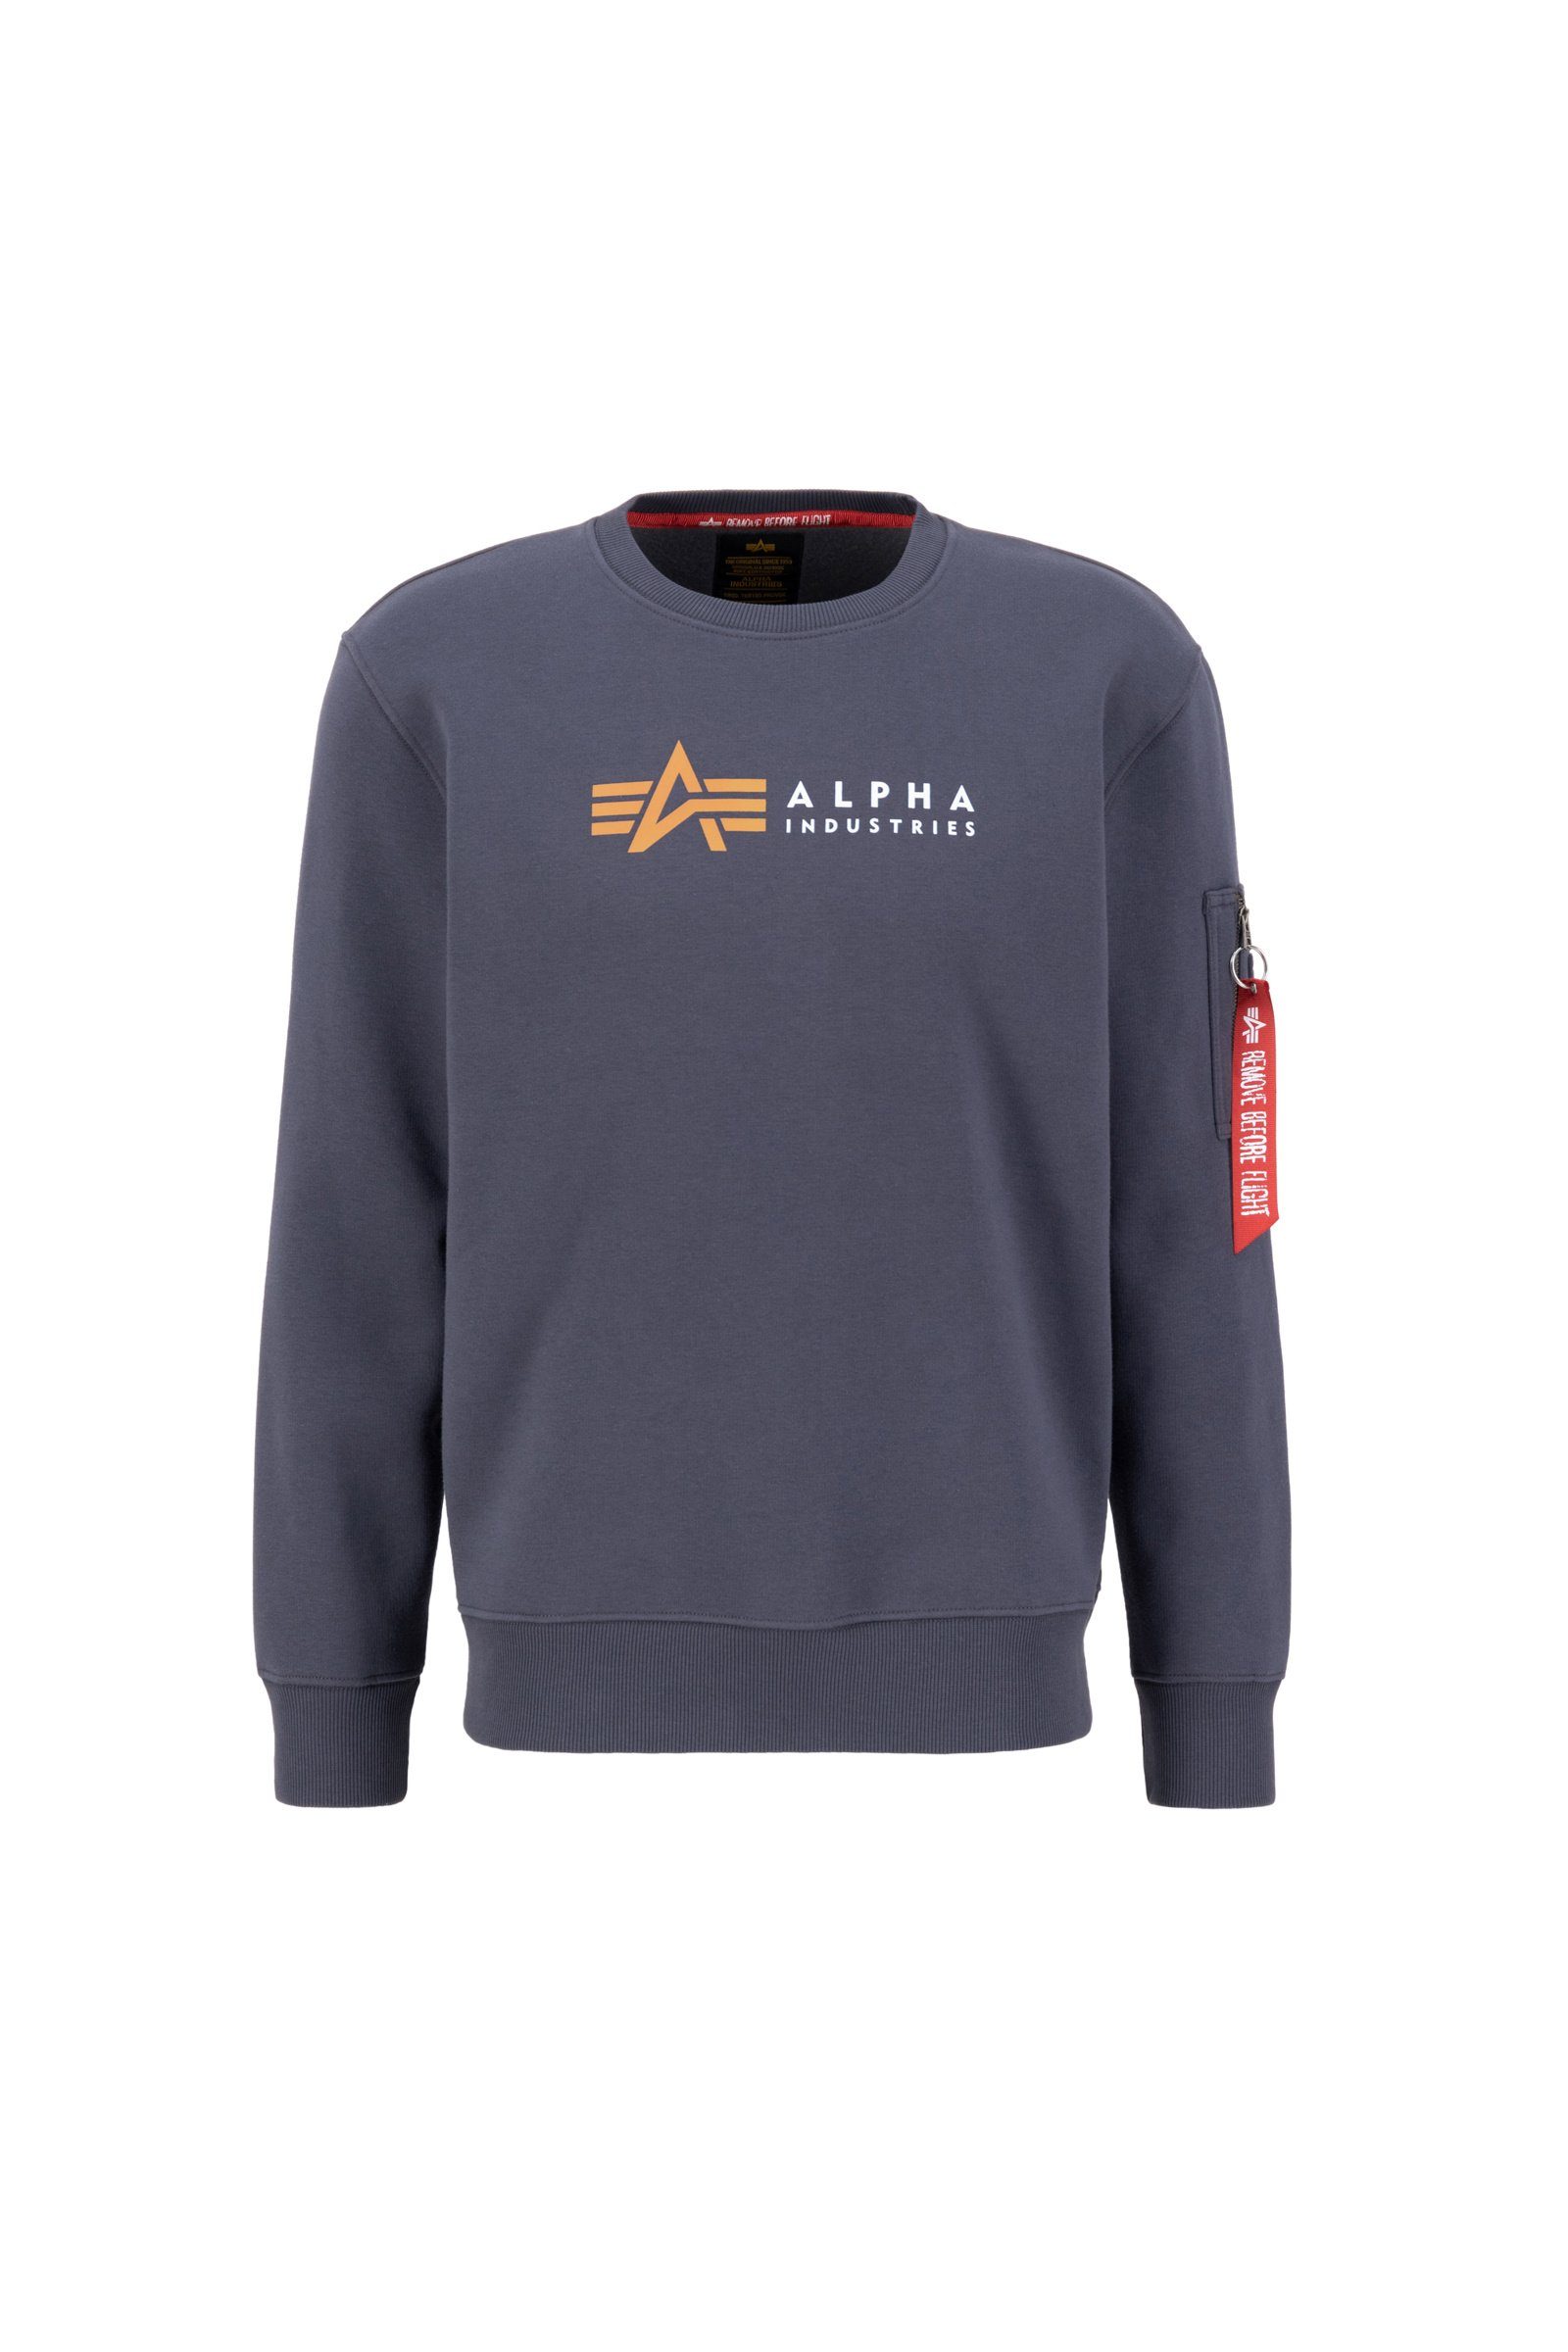 greyblack Alpha Sweatshirt Alpha Herren Industries Alpha Industries Label Sweatshirt